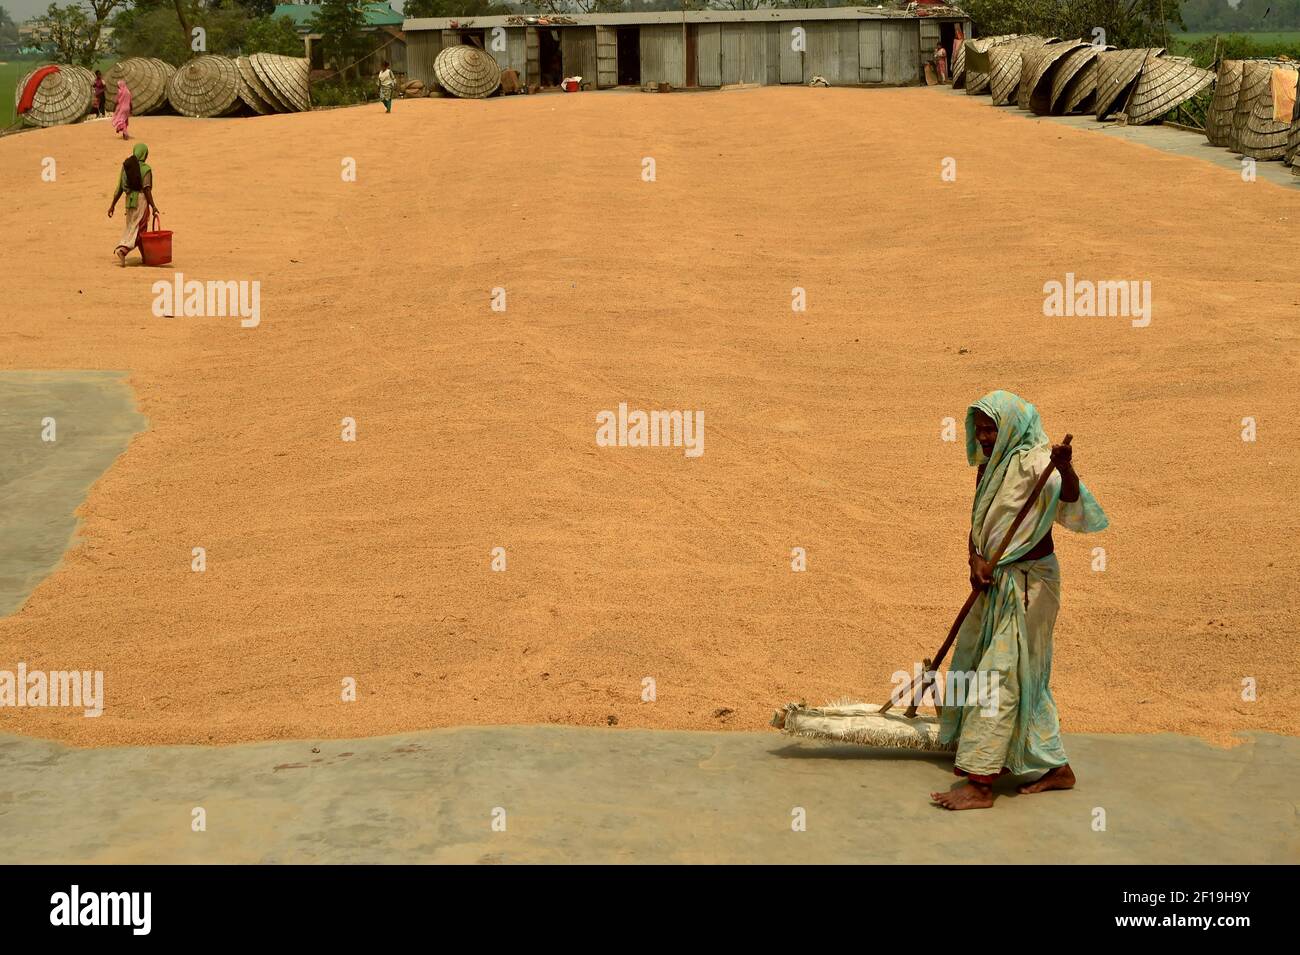 Brahmanbaria. März 2021, 7th. Ein Arbeiter trocknet am 7. März 2021 in einem Hof einer Reismühle in Brahmanbaria, 109 Kilometer nordöstlich der Hauptstadt Dhaka, Bangladesch, Reisernte. Quelle: Xinhua/Alamy Live News Stockfoto